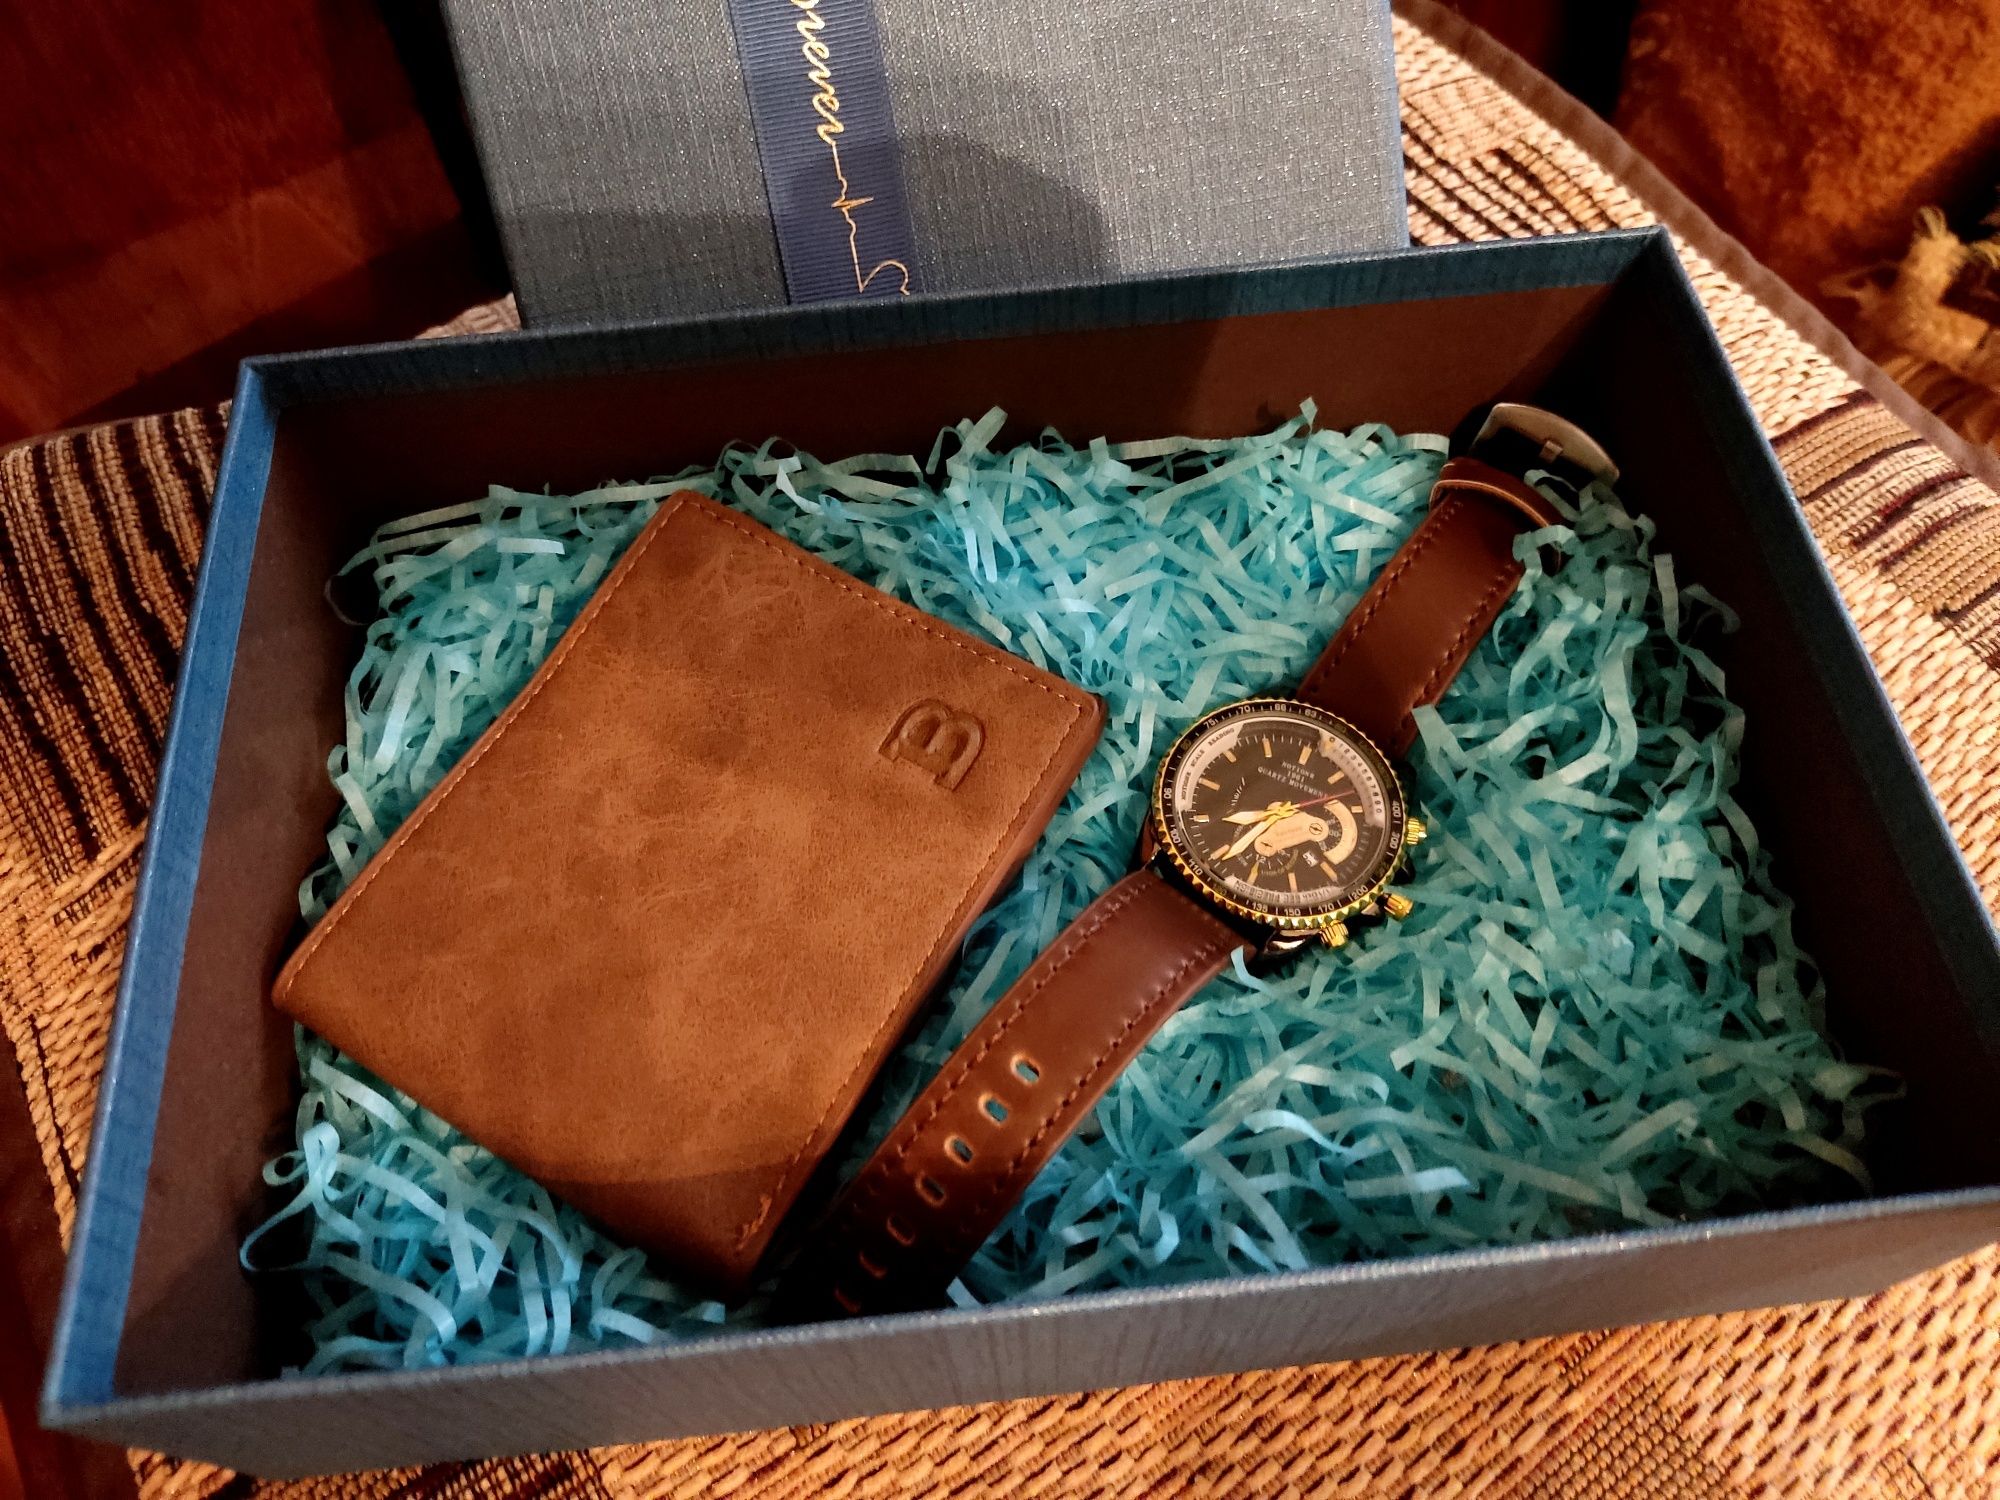 Подарок для мужчины,стильные часы и портмоне